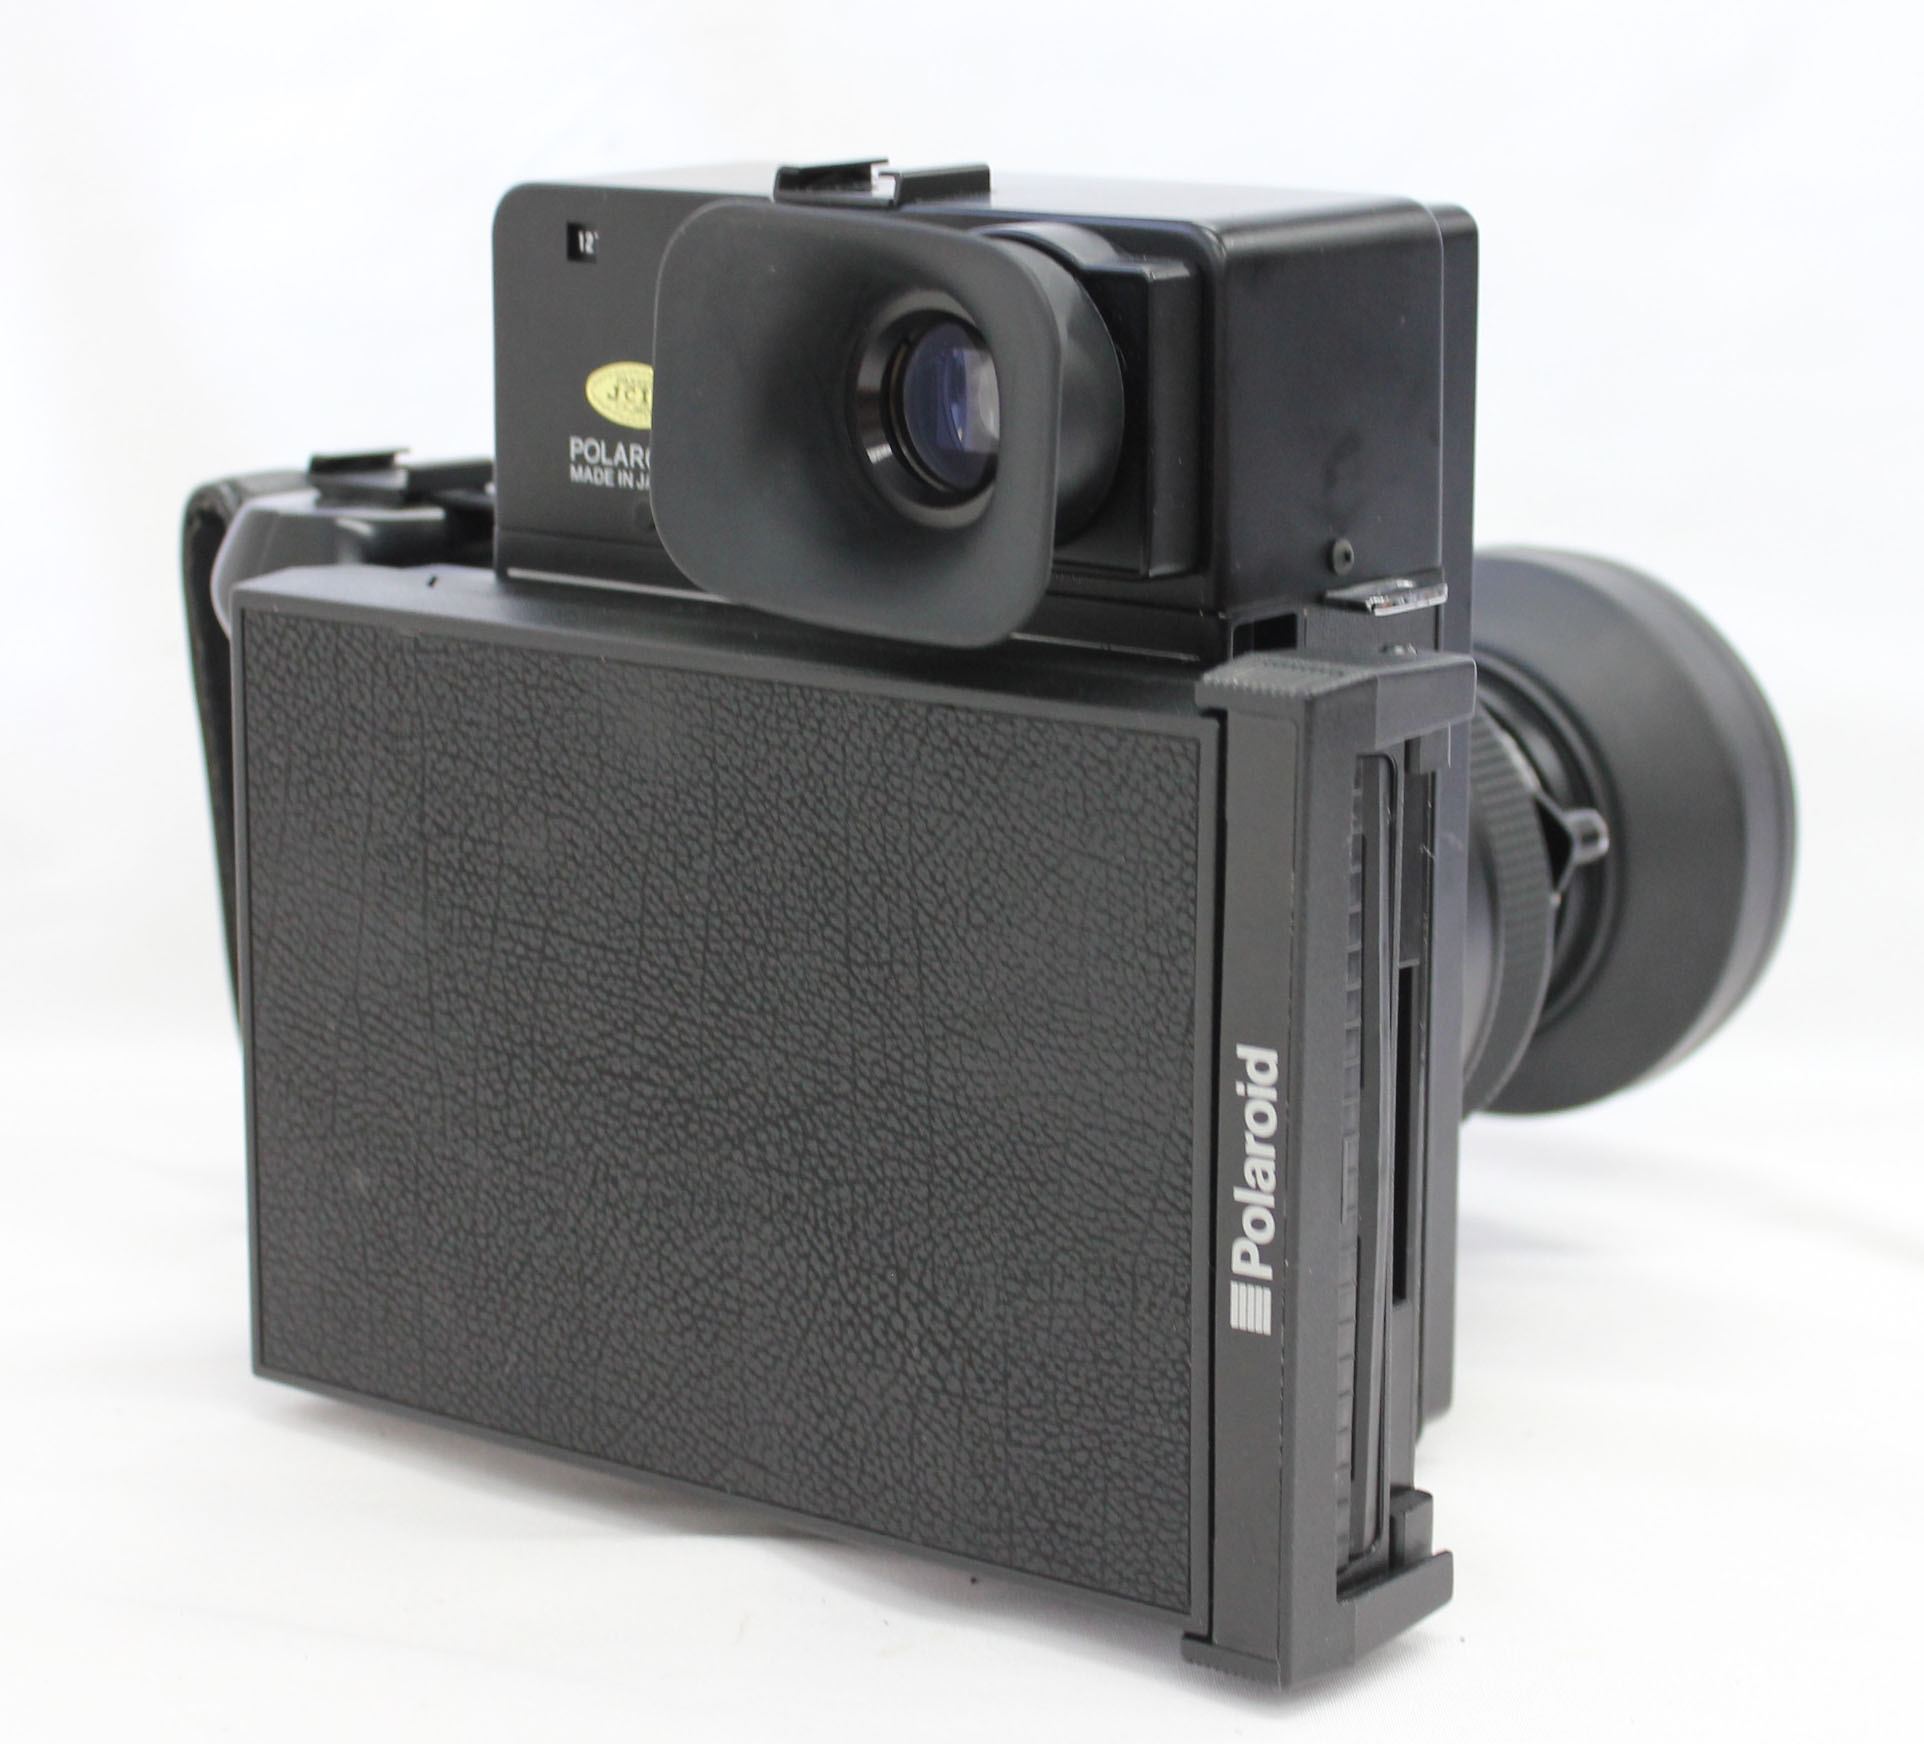  Polaroid 600SE Instant Camera w/ Mamiya 127mm F/4.7 Lens and Polaroid Back from Japan Photo 2